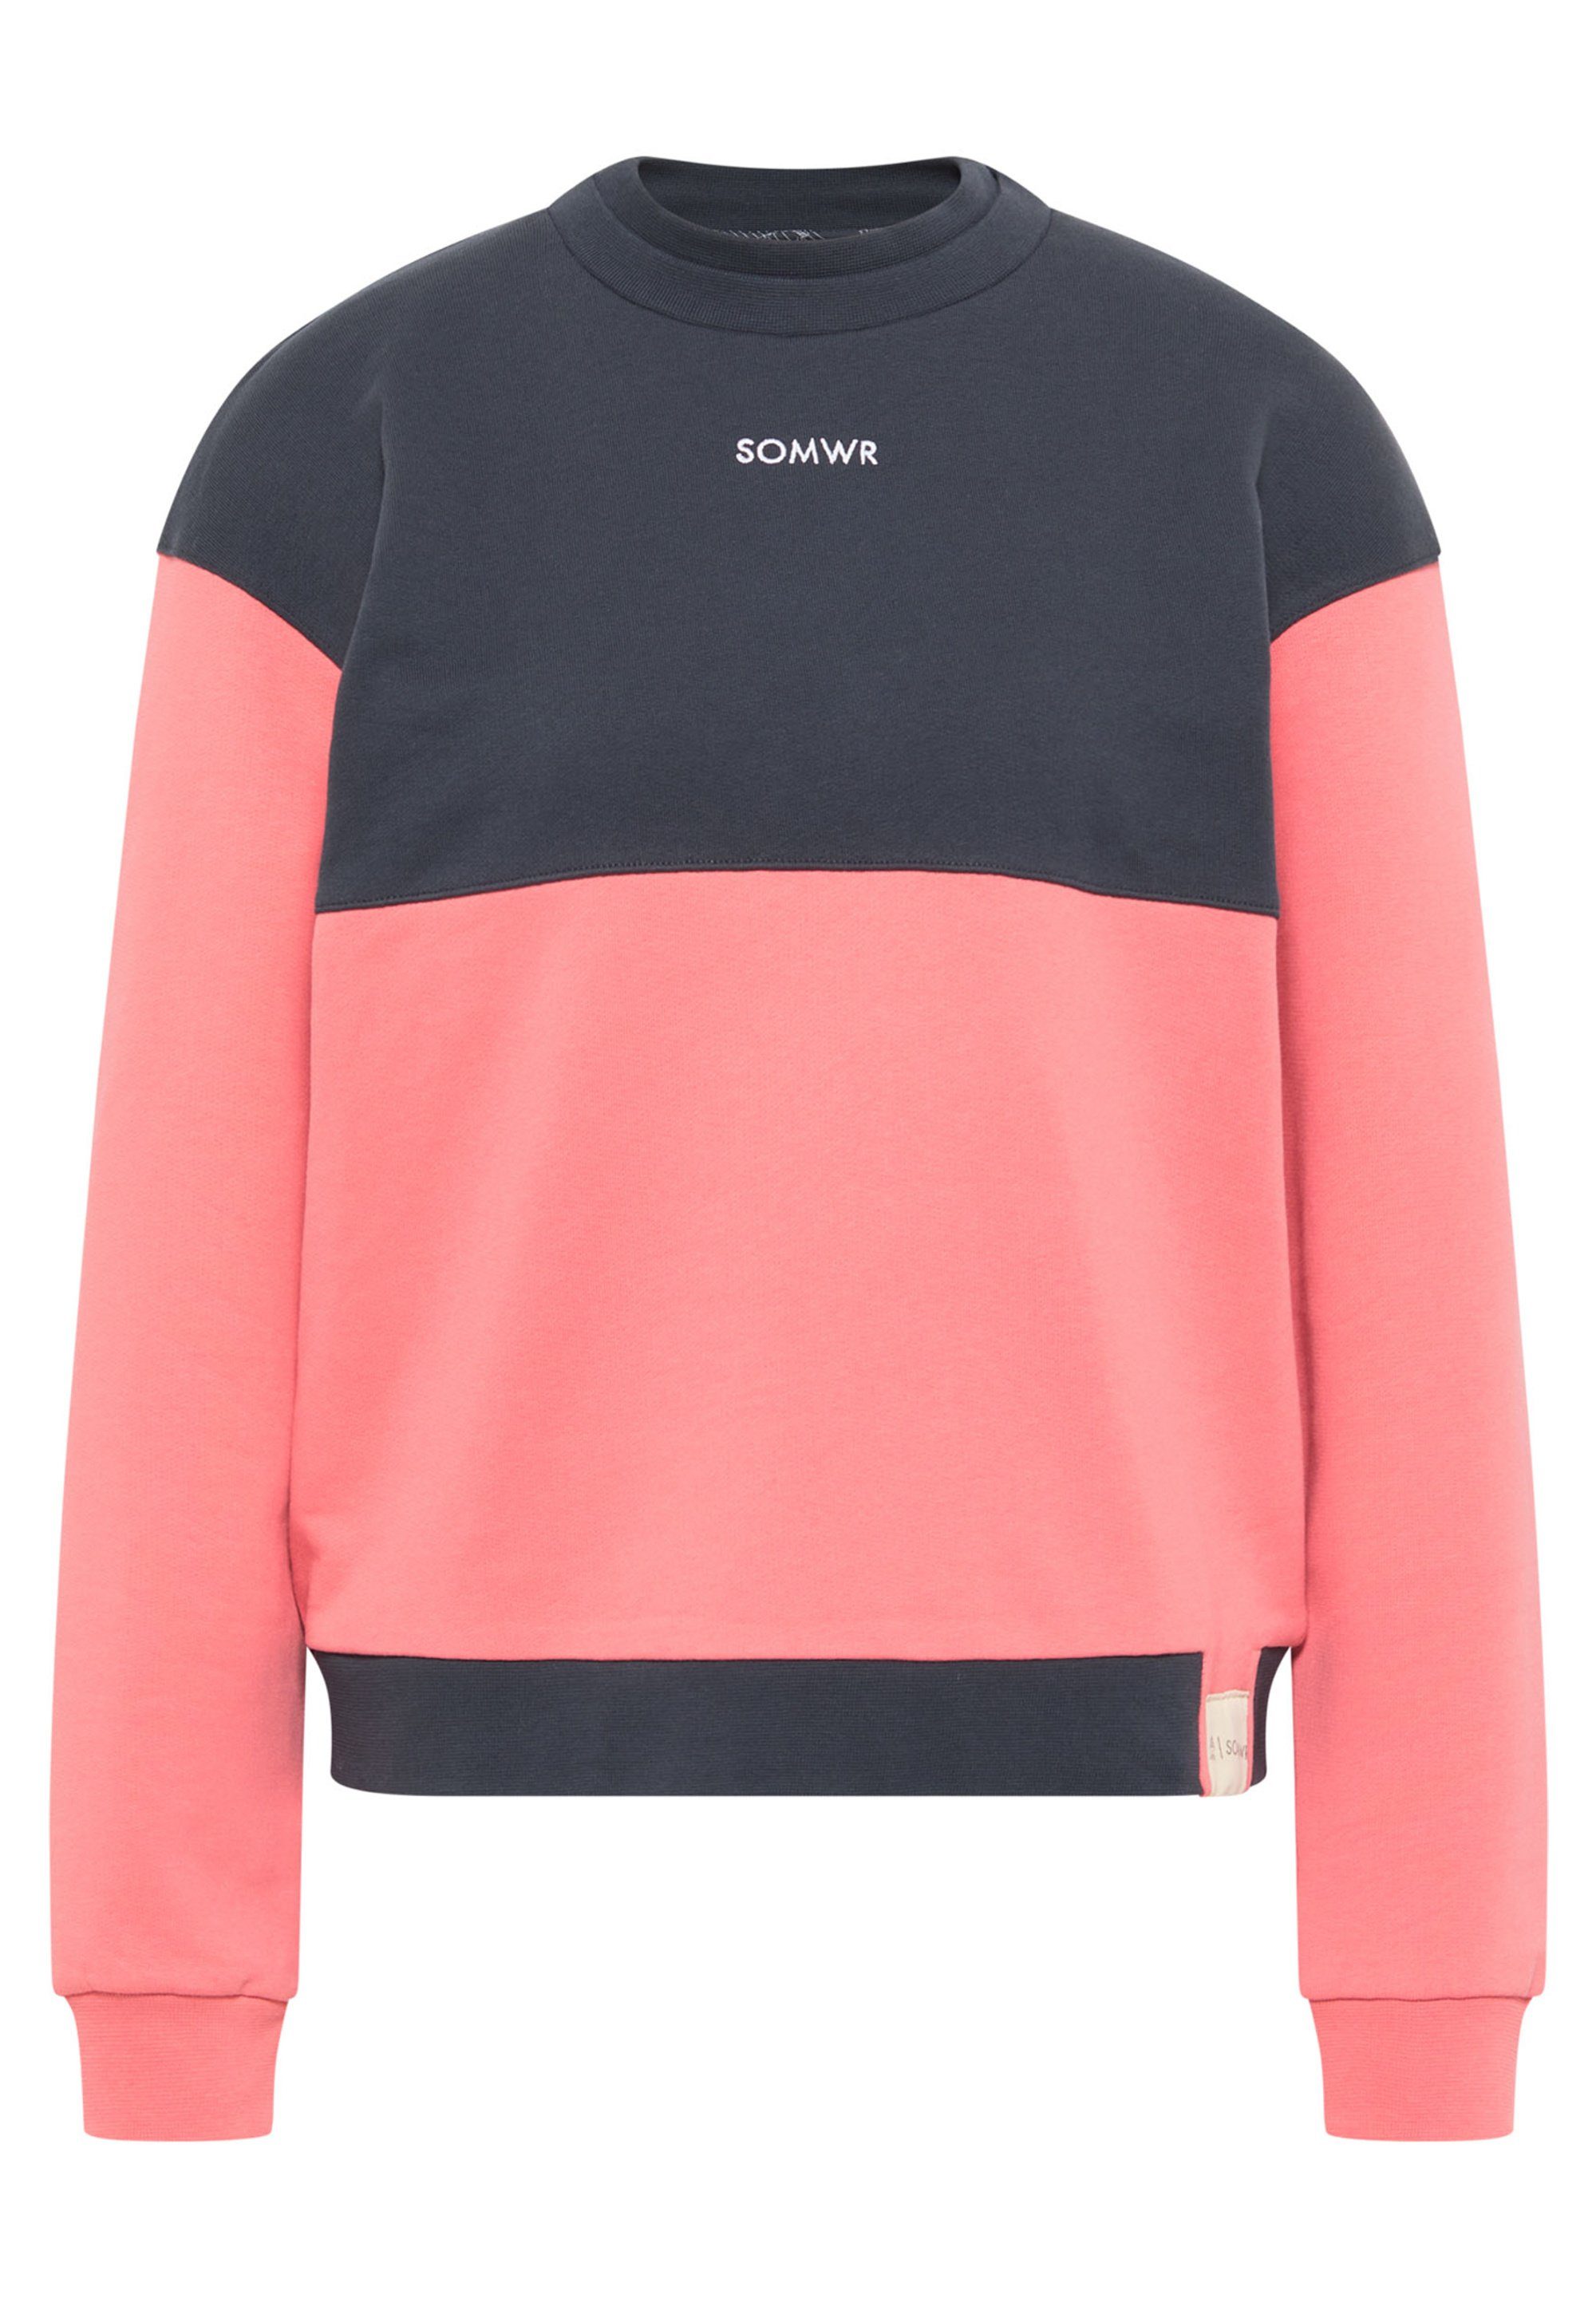 Damen Pullover SOMWR Sweatshirt SWEETEST SWEATER 10x Klima positiv / Strand Plastik ausgeglichen